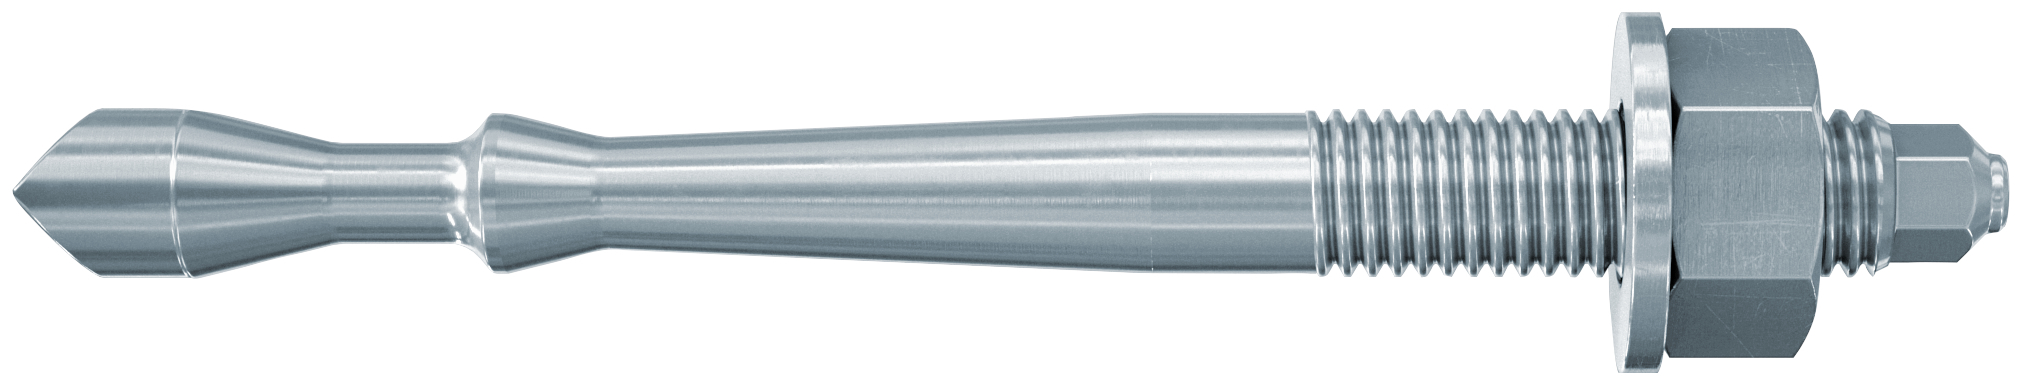 fischer Barra multicono in acciaio FHB II-A S M12x75/100 per ancorante chimico FIS HB (1 Pz.) Barra multicono corta in acciaio zincato classe 8.8. Massime prestazioni a trazione in calcestruzzo fessurato e a ridotte distanze dai bordi..